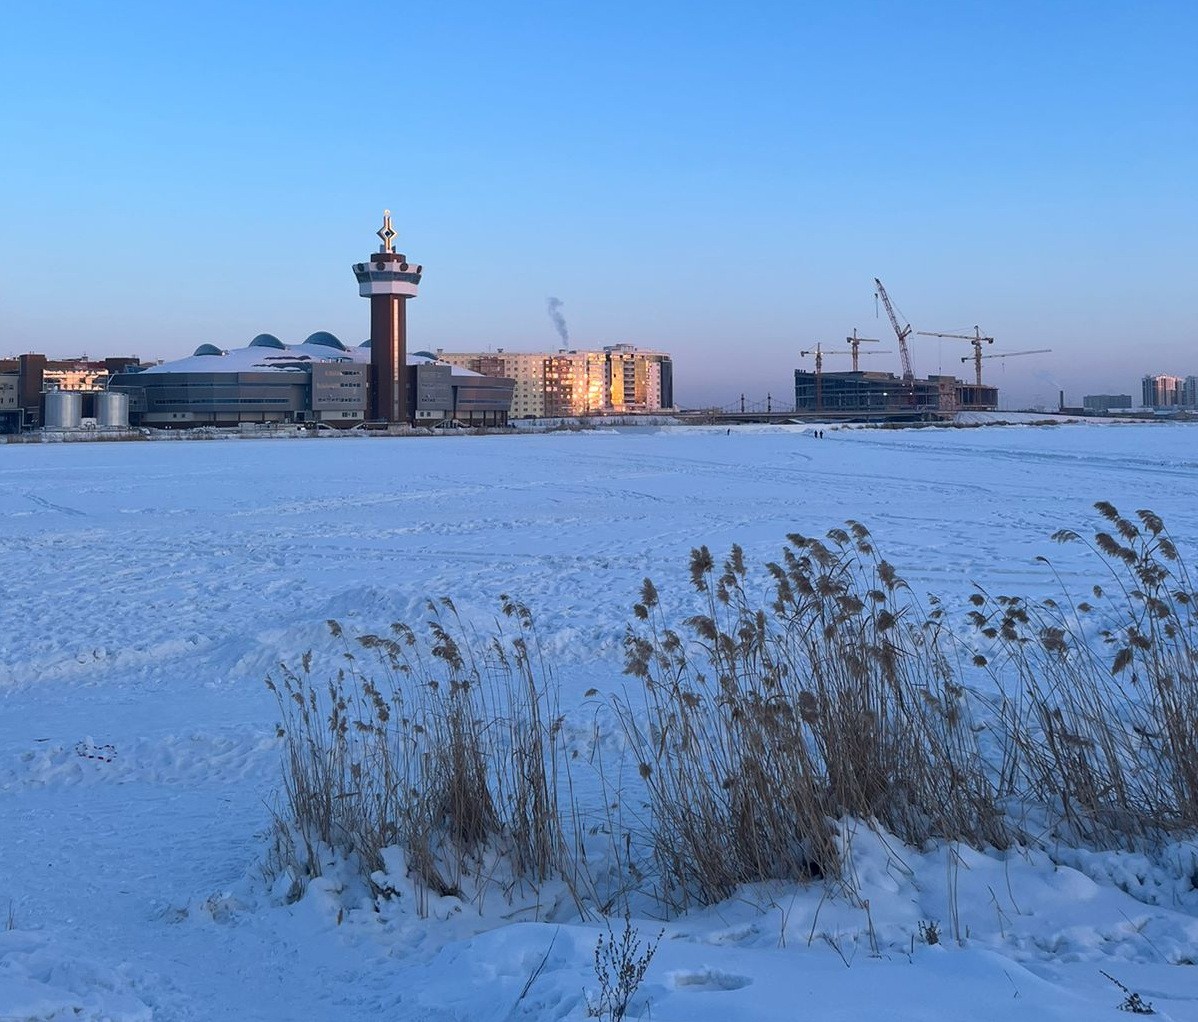 Прогноз погоды на 23 марта: В Якутске похолодает, ночью порывы ветра